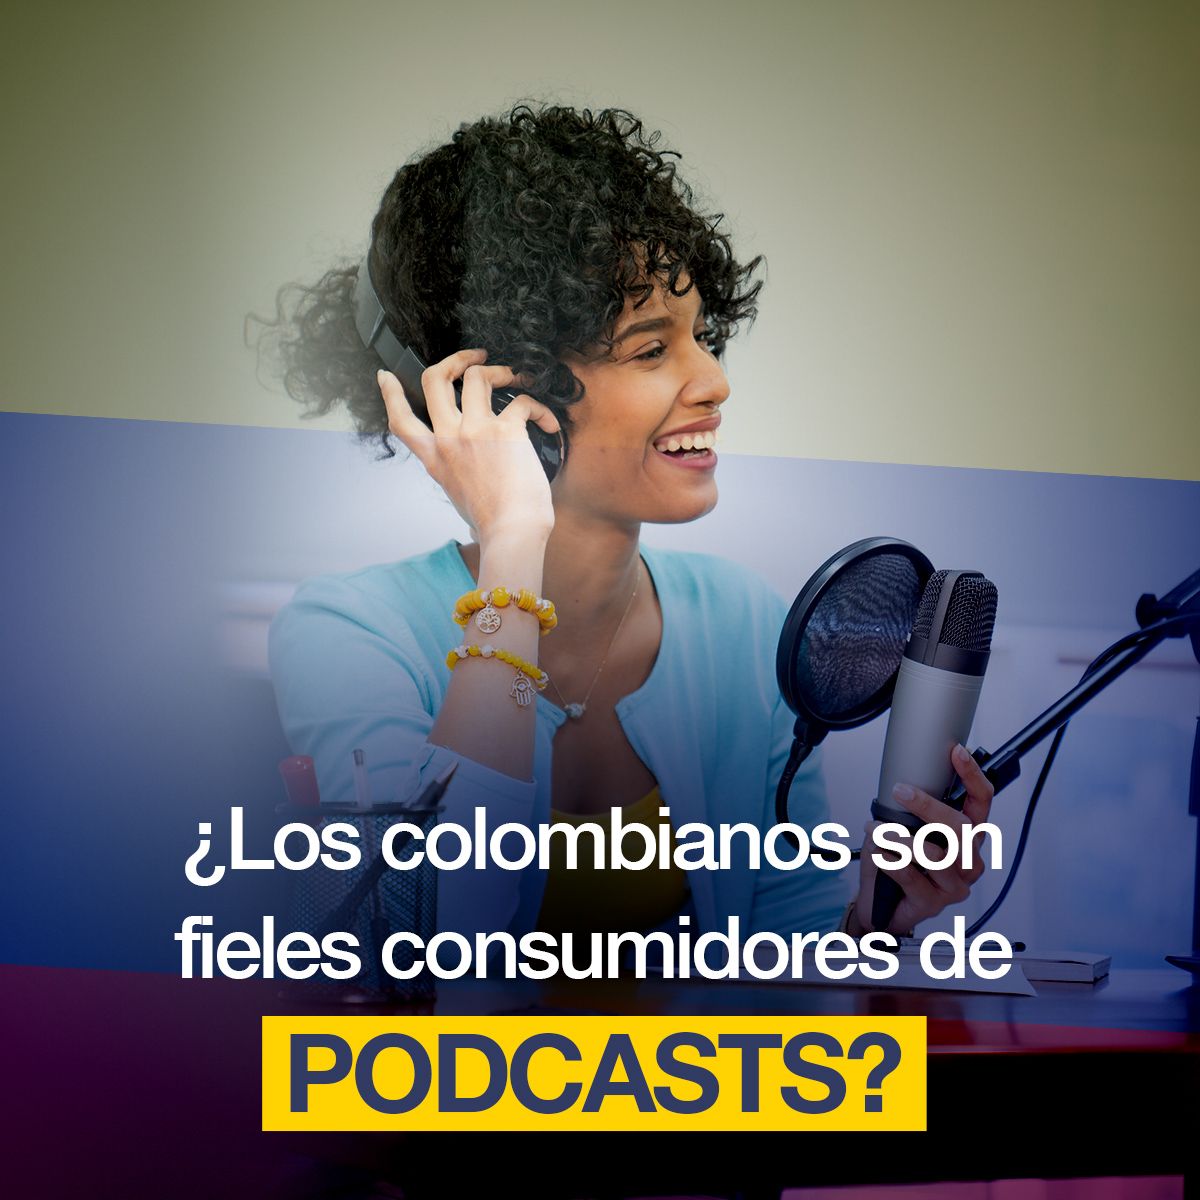 ¿Los colombianos son fieles consumidores de podcasts?